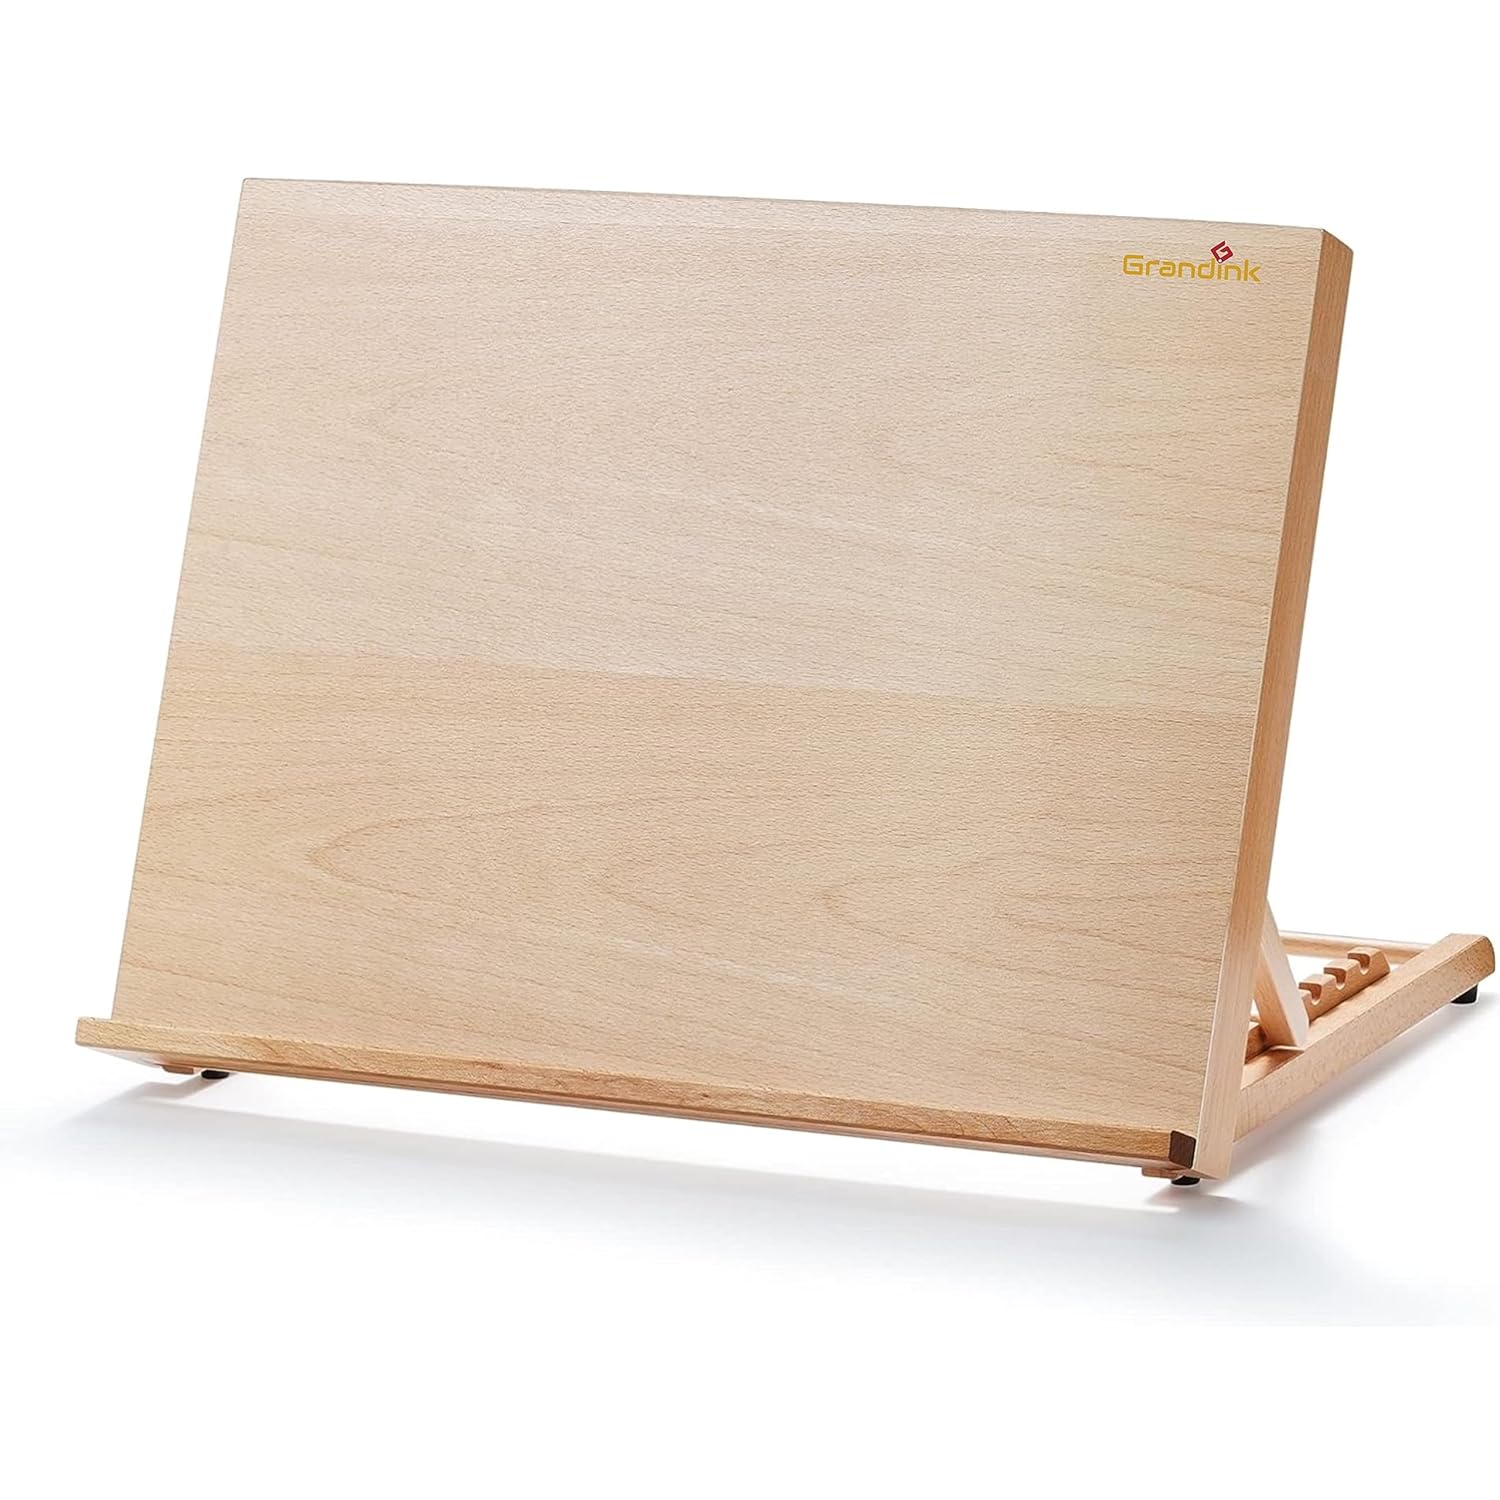 Grandink® Adjustable Tabletop Large Painting Easel